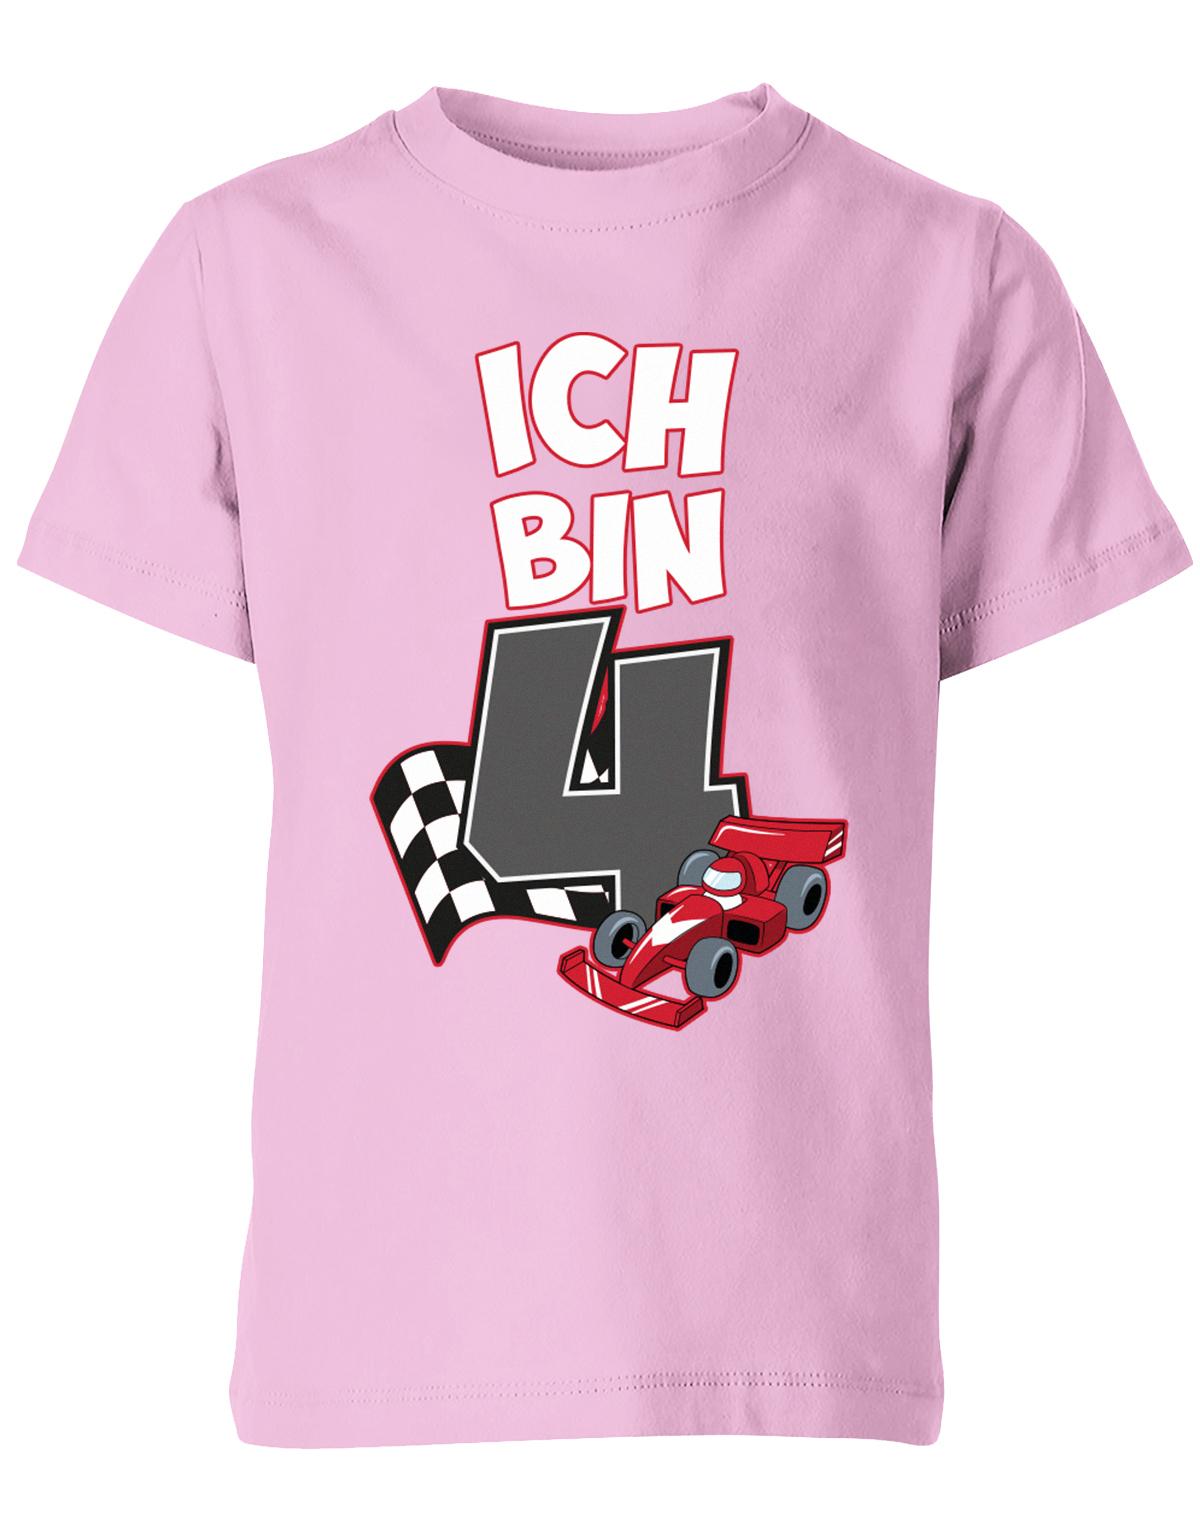 ich-bin-4-autorennen-rennwagen-geburtstag-rennfahrer-kinder-shirt-rosa